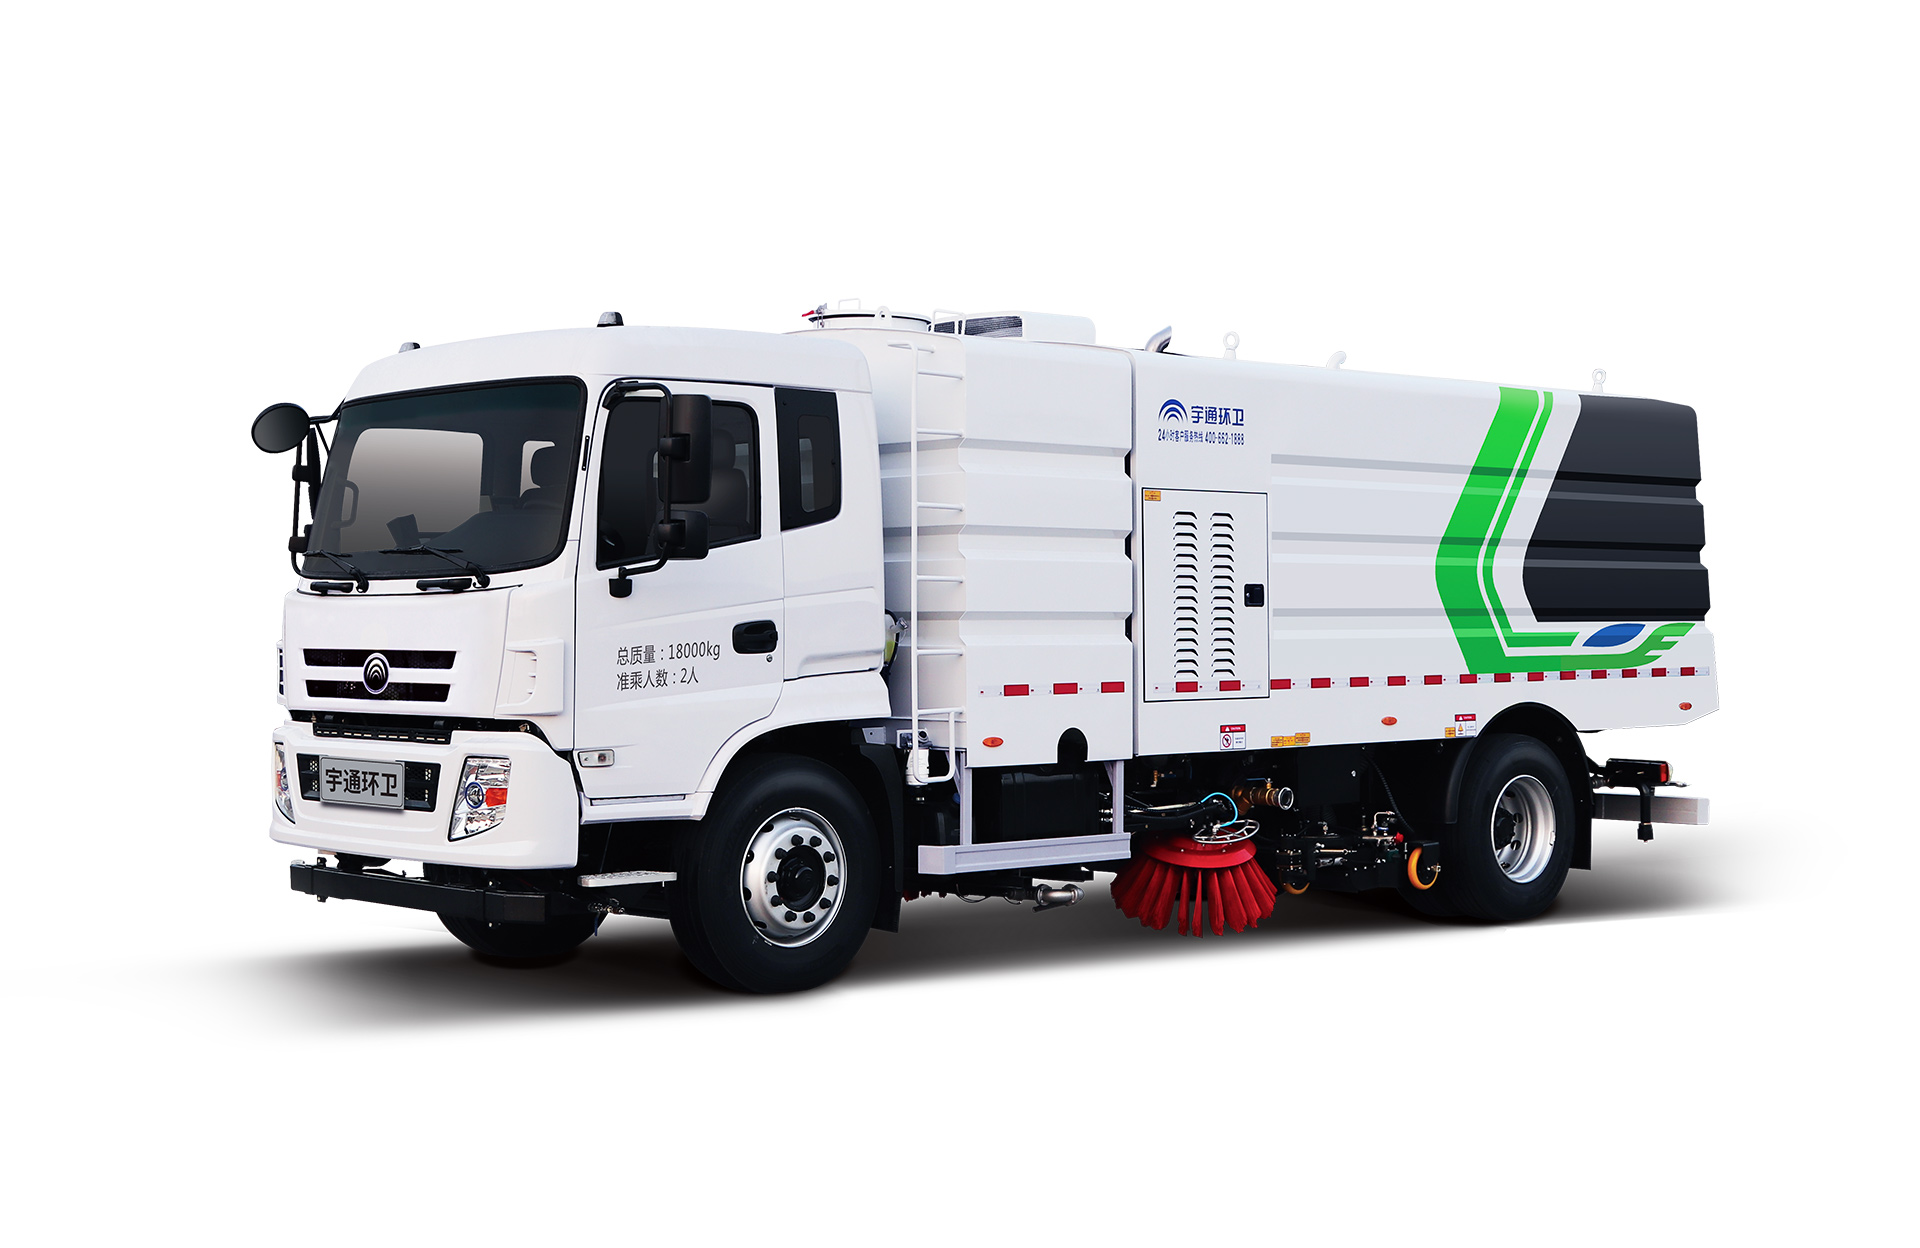 18t洗掃車 宇通環衛洗掃車主要具有路面沖洗、路面清掃、垃圾回收、路緣和路沿石立面洗刷等多種功能。